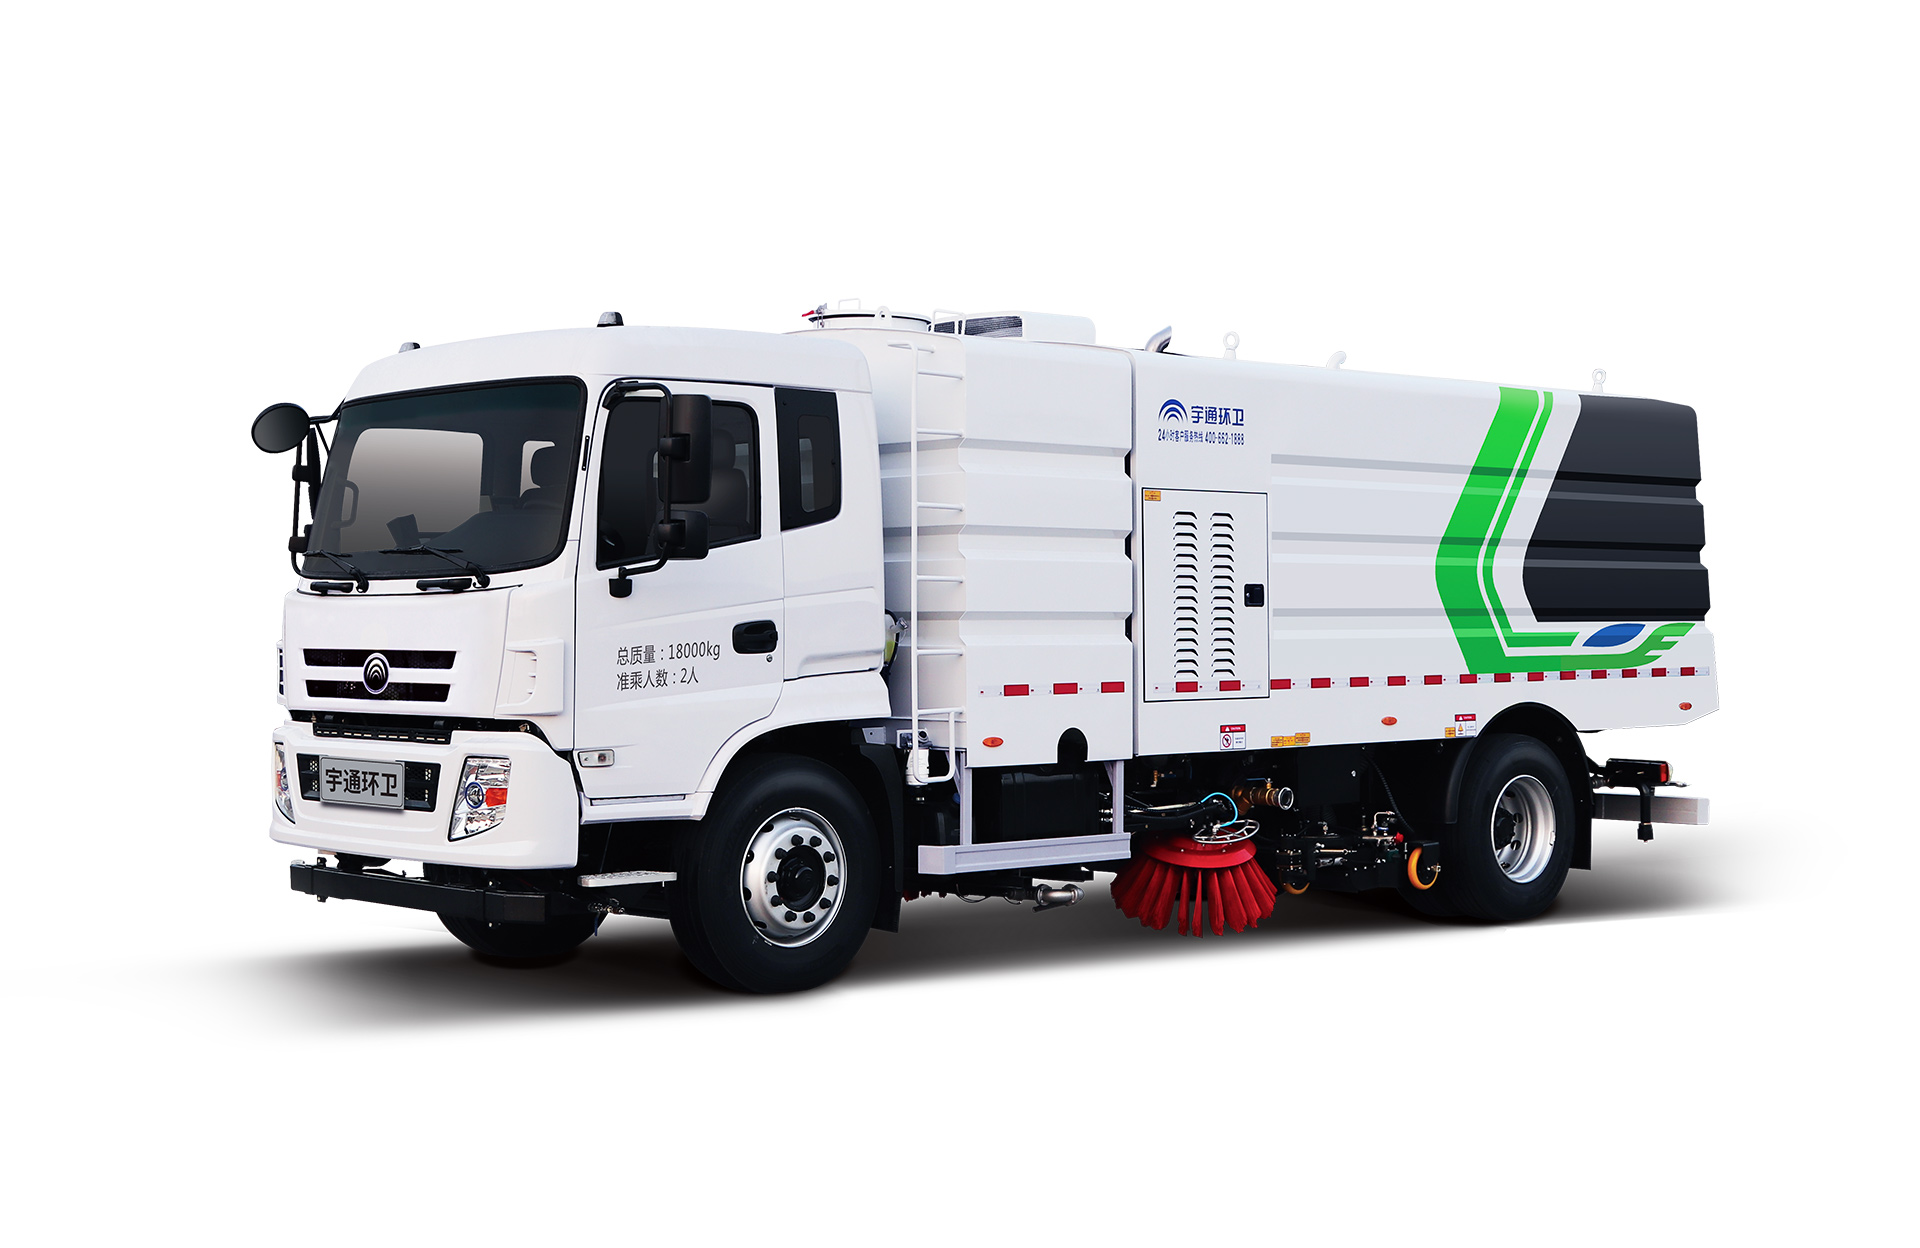 18t洗掃車 宇通環衛洗掃車主要具有路面沖洗、路面清掃、垃圾回收、路緣和路沿石立面洗刷等多種功能。